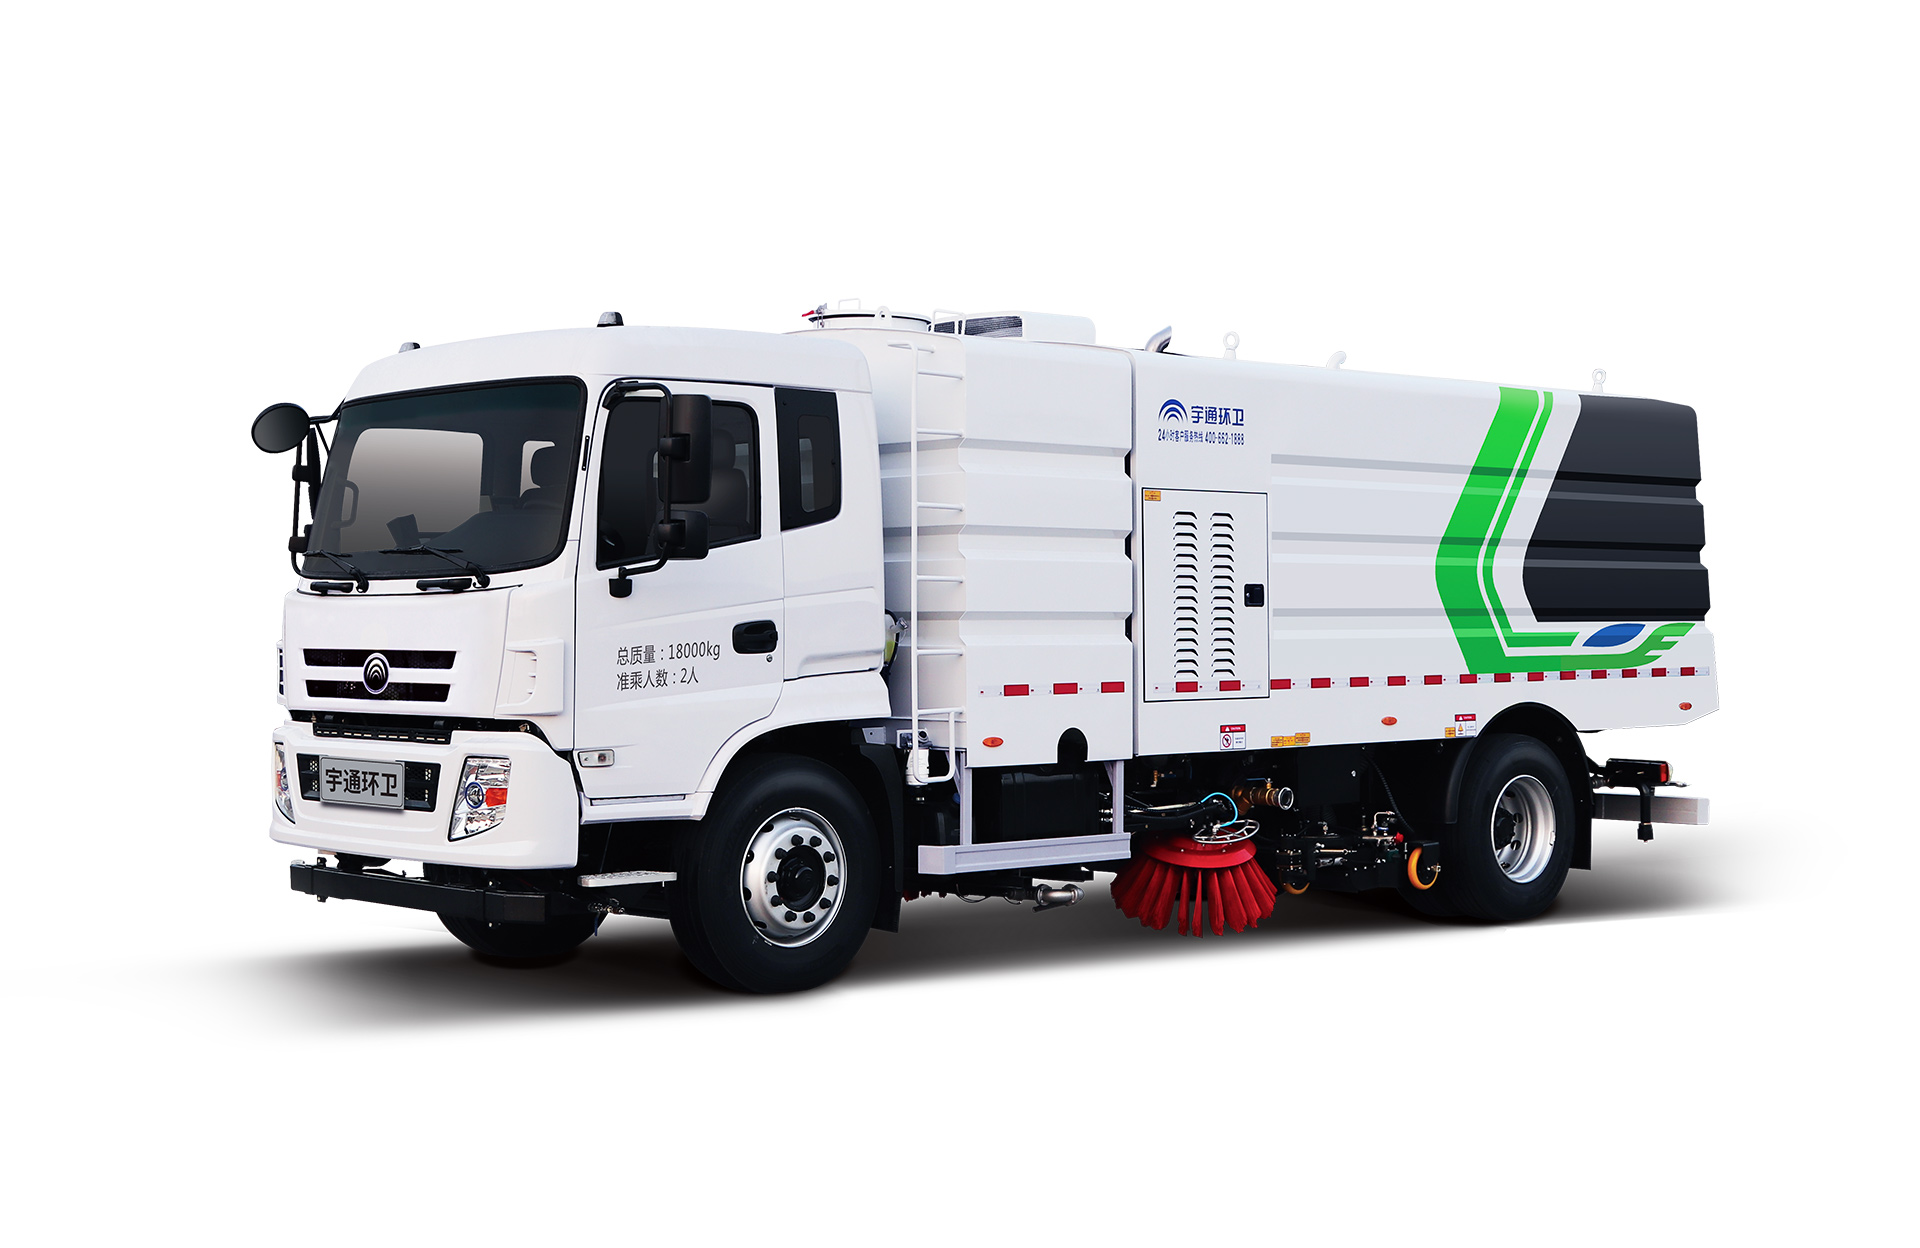 18t洗掃車 宇通環衛洗掃車主要具有路面沖洗、路面清掃、垃圾回收、路緣和路沿石立面洗刷等多種功能。